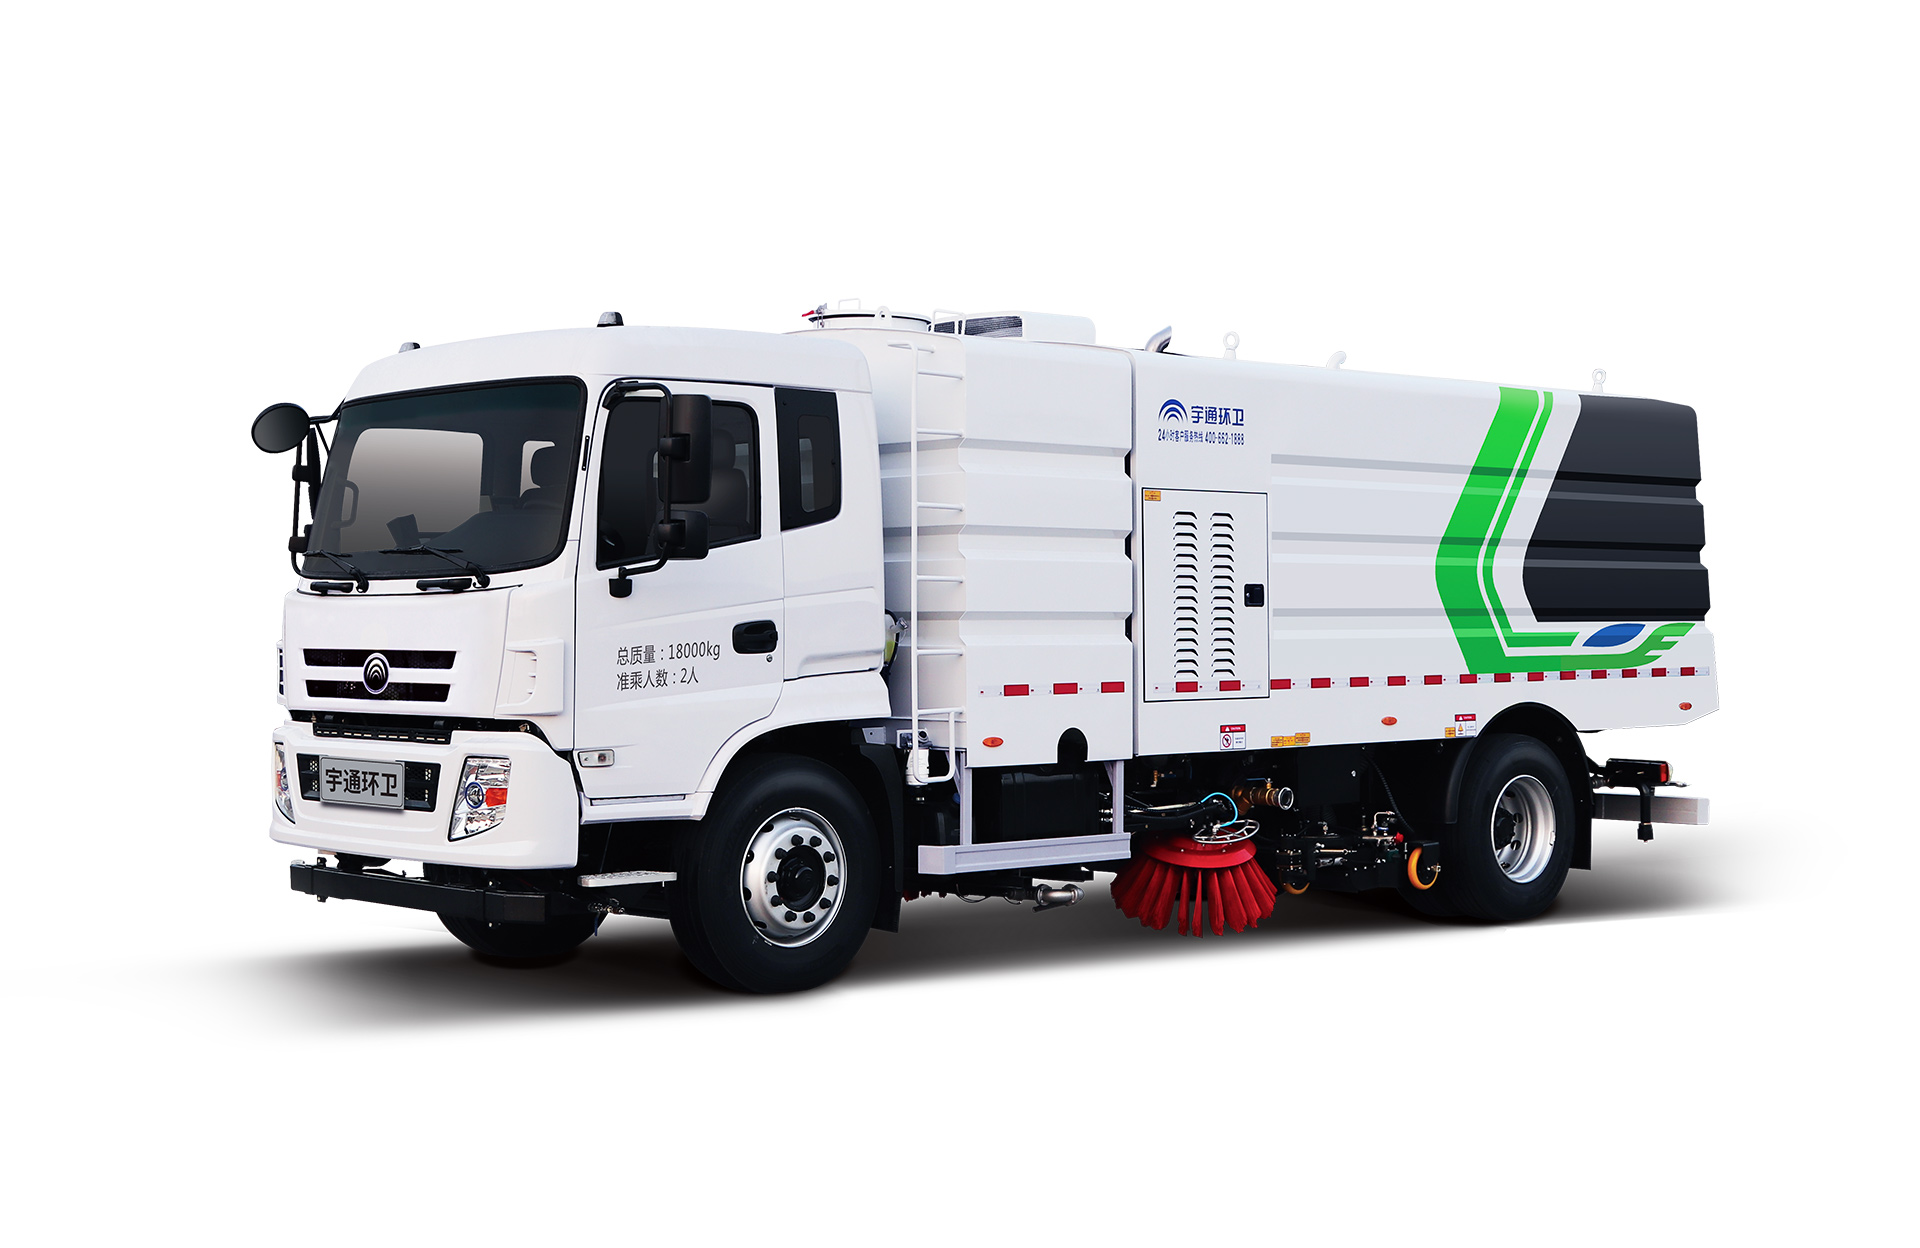 18t洗掃車 宇通環衛洗掃車主要具有路面沖洗、路面清掃、垃圾回收、路緣和路沿石立面洗刷等多種功能。